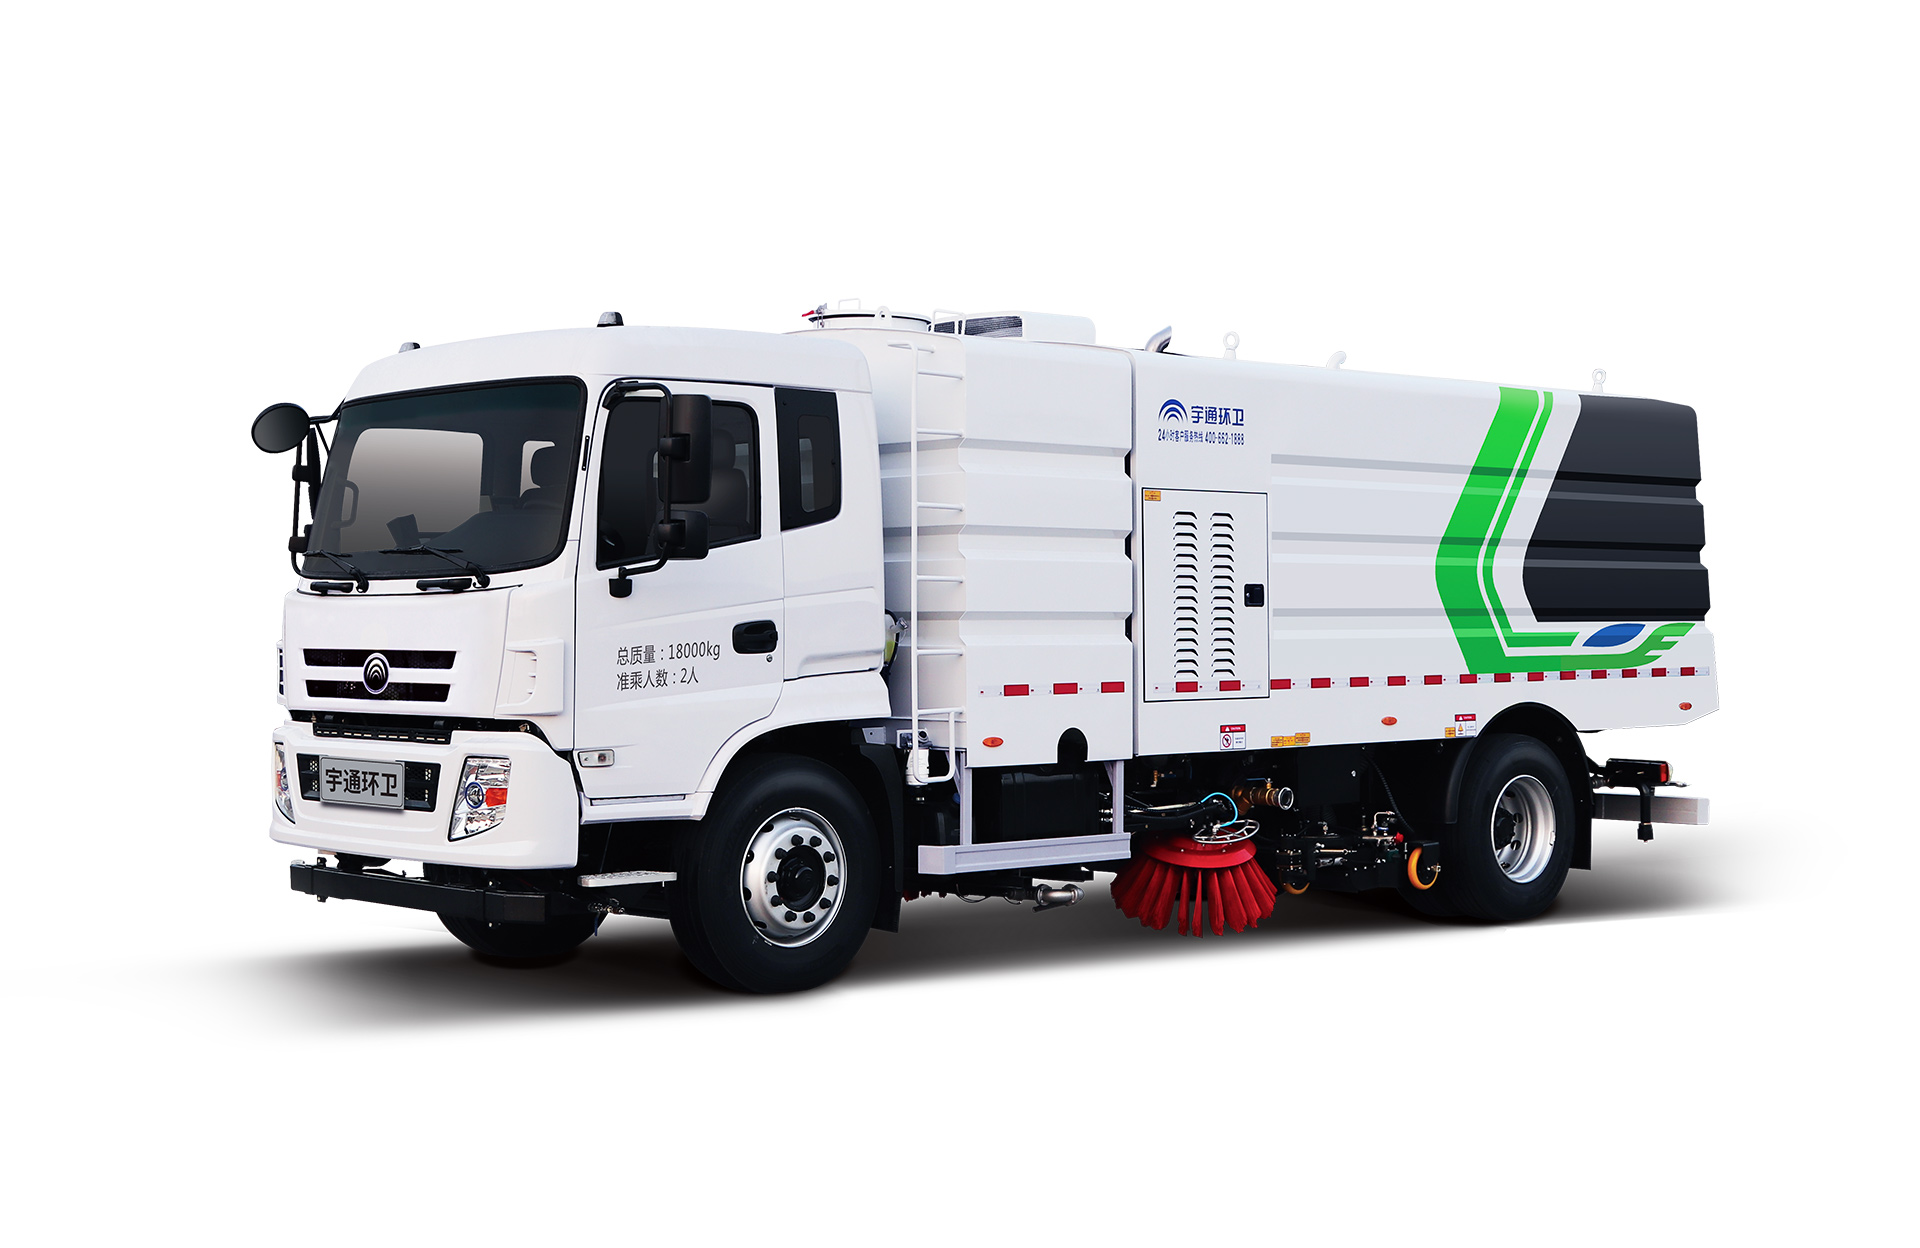 18t洗掃車 宇通環衛洗掃車主要具有路面沖洗、路面清掃、垃圾回收、路緣和路沿石立面洗刷等多種功能。